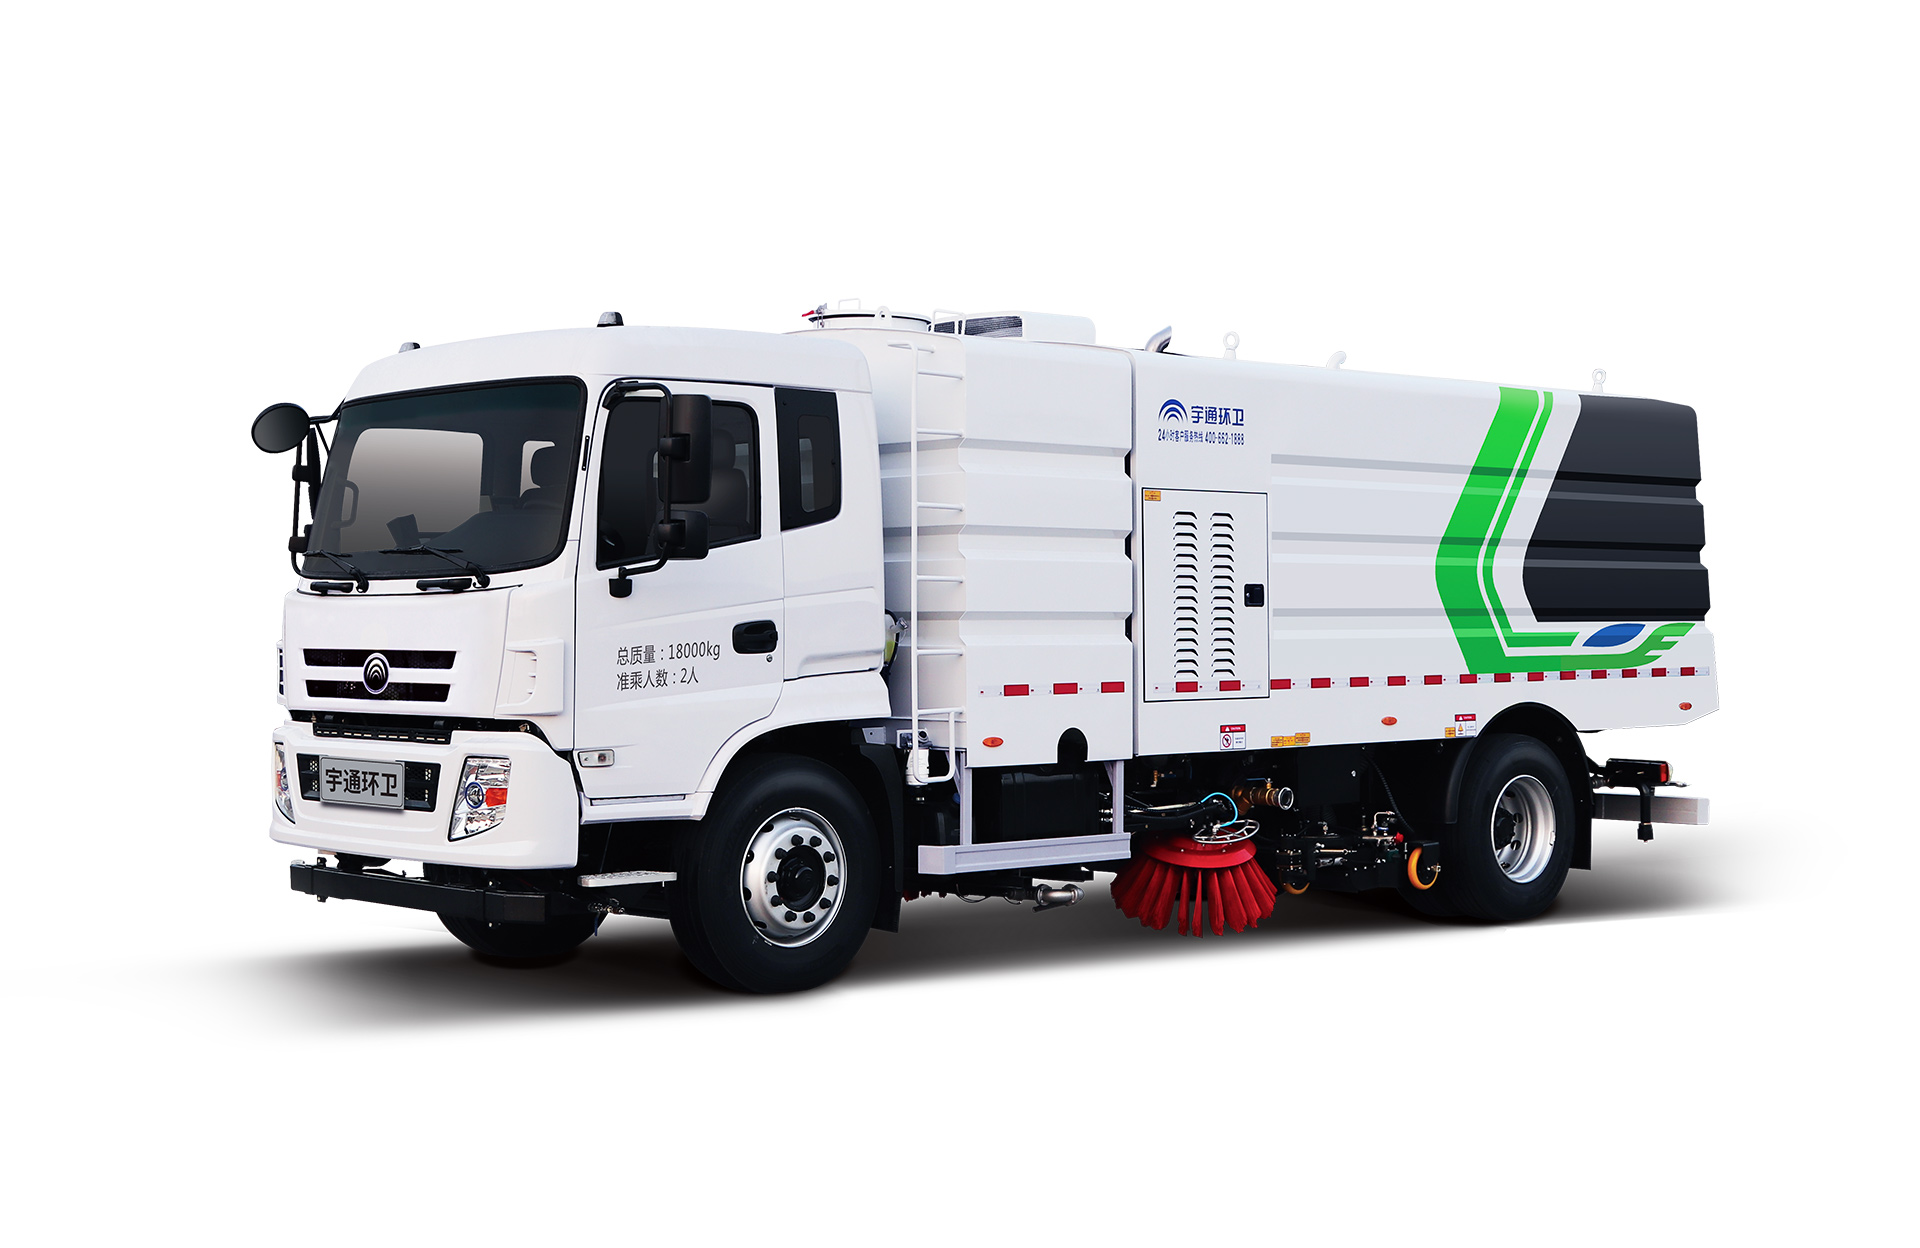 18t洗掃車 宇通環衛洗掃車主要具有路面沖洗、路面清掃、垃圾回收、路緣和路沿石立面洗刷等多種功能。